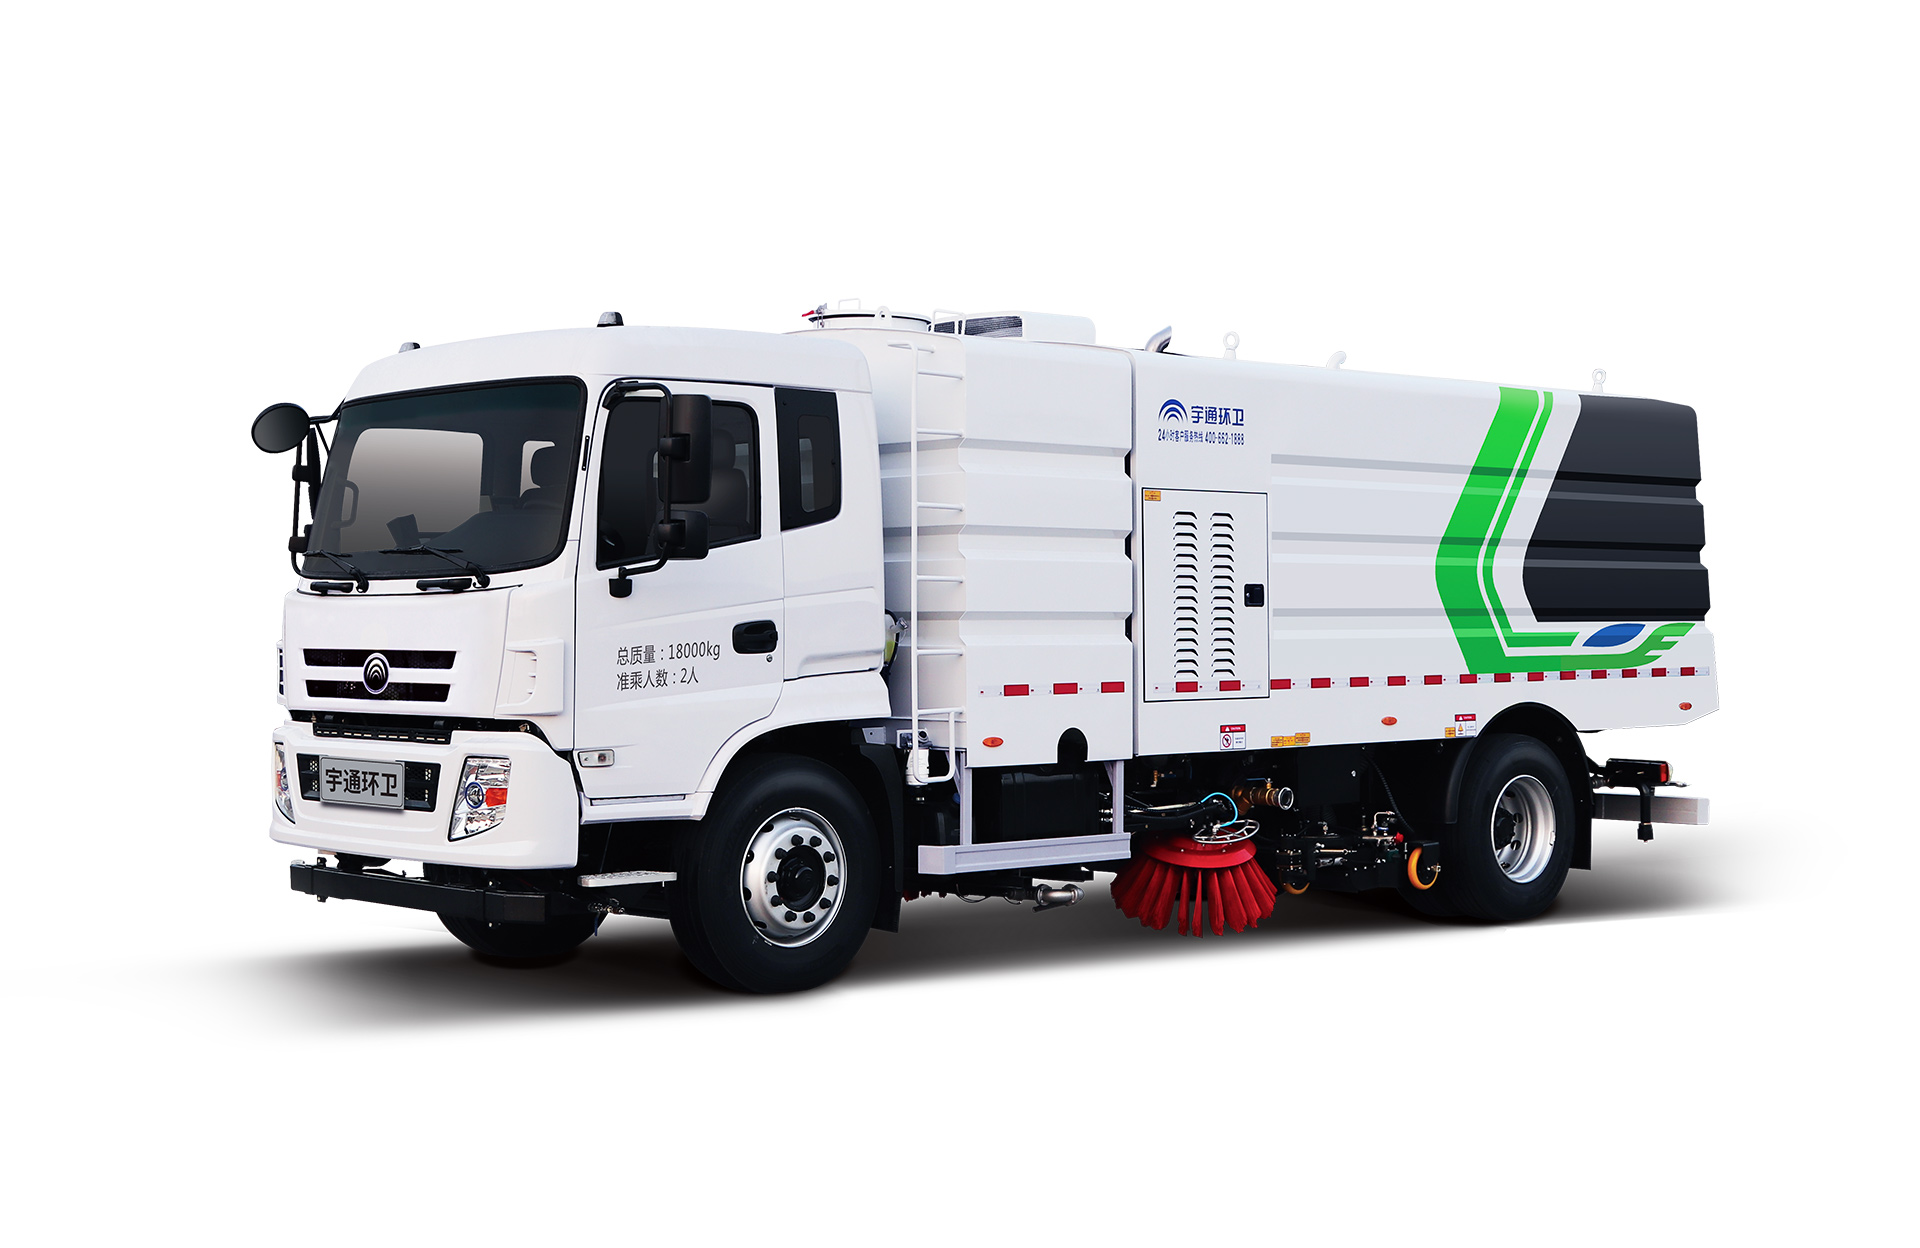 18t洗掃車 宇通環衛洗掃車主要具有路面沖洗、路面清掃、垃圾回收、路緣和路沿石立面洗刷等多種功能。